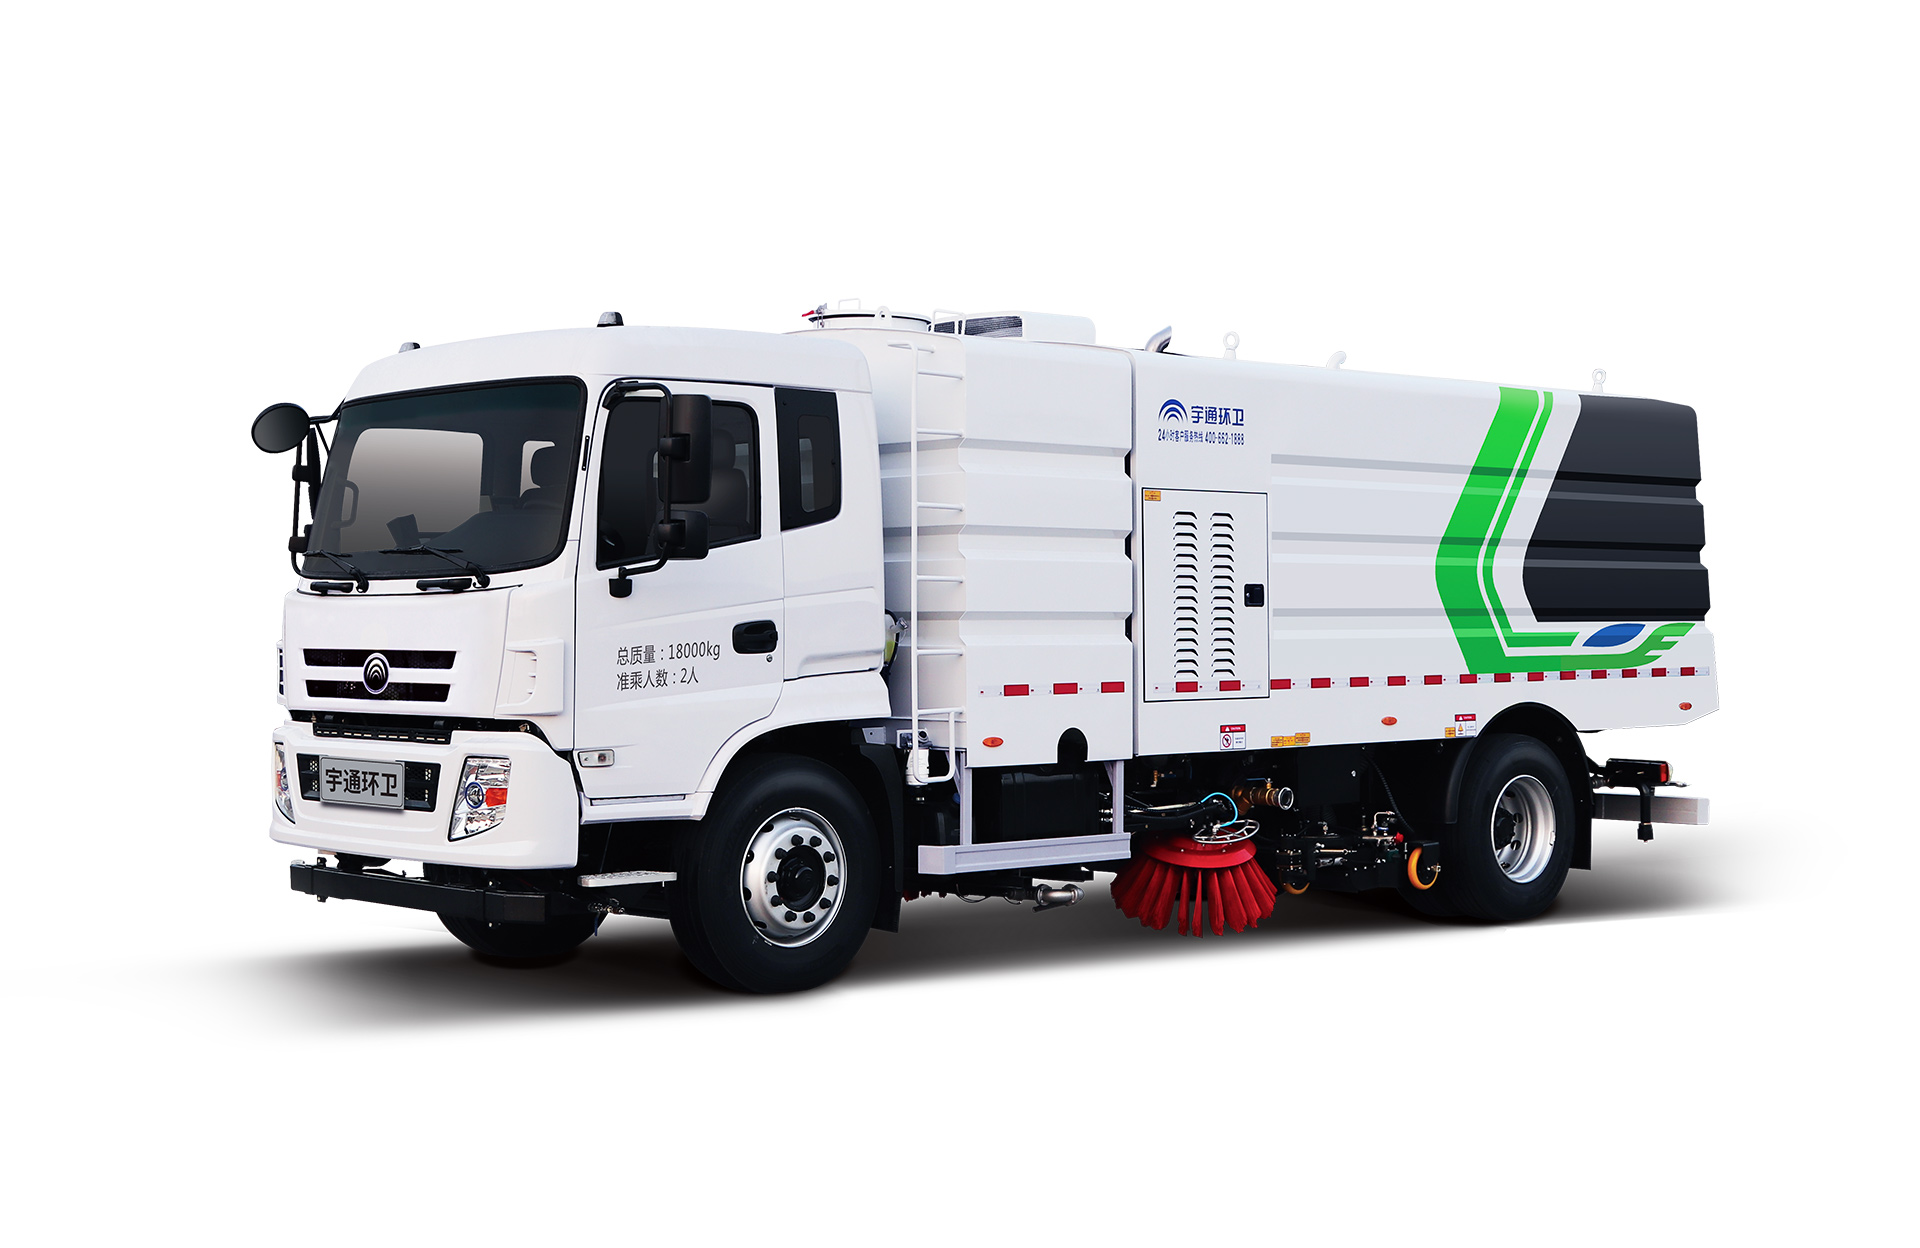 18t洗掃車 宇通環衛洗掃車主要具有路面沖洗、路面清掃、垃圾回收、路緣和路沿石立面洗刷等多種功能。